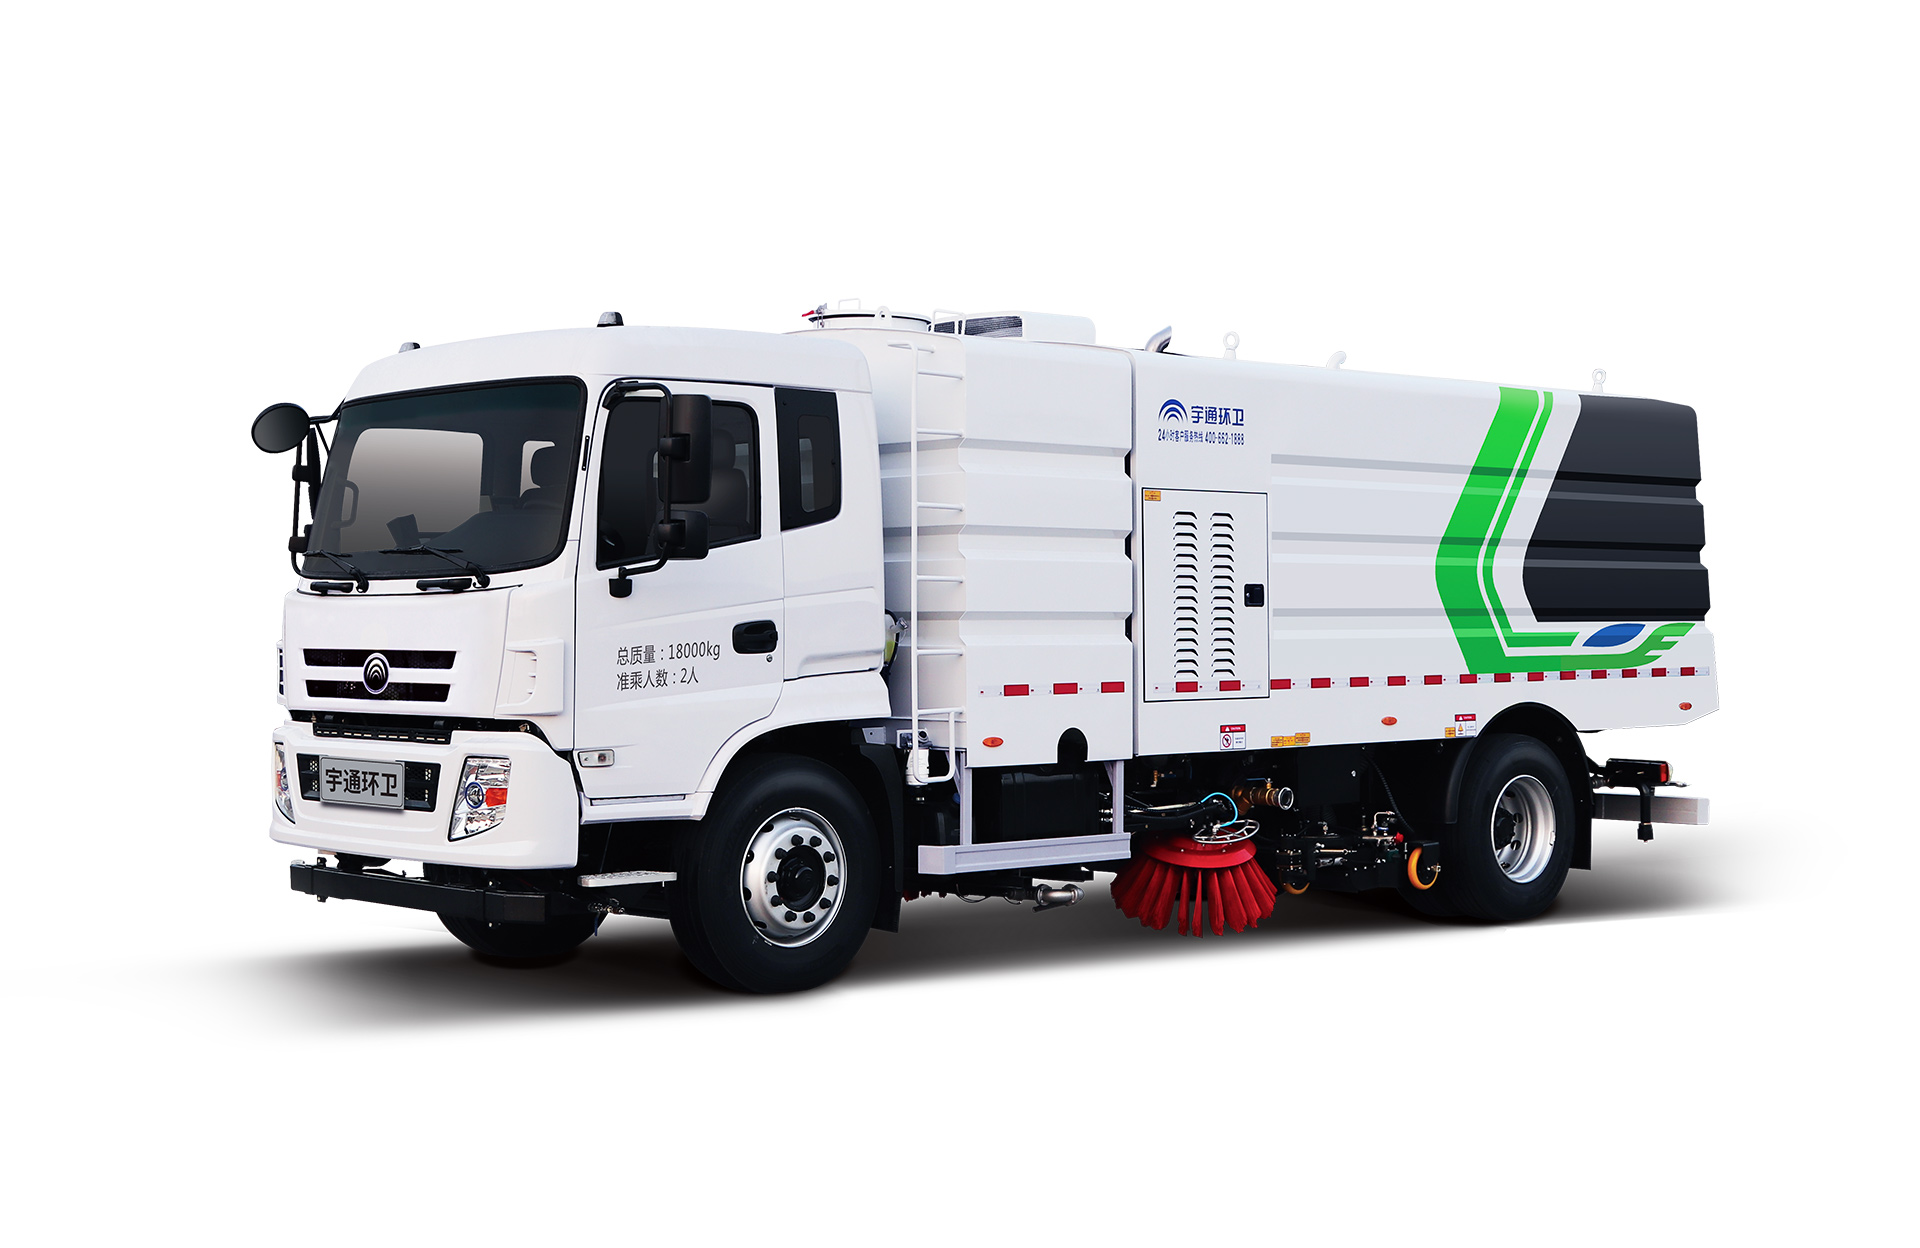 18t洗掃車 宇通環衛洗掃車主要具有路面沖洗、路面清掃、垃圾回收、路緣和路沿石立面洗刷等多種功能。